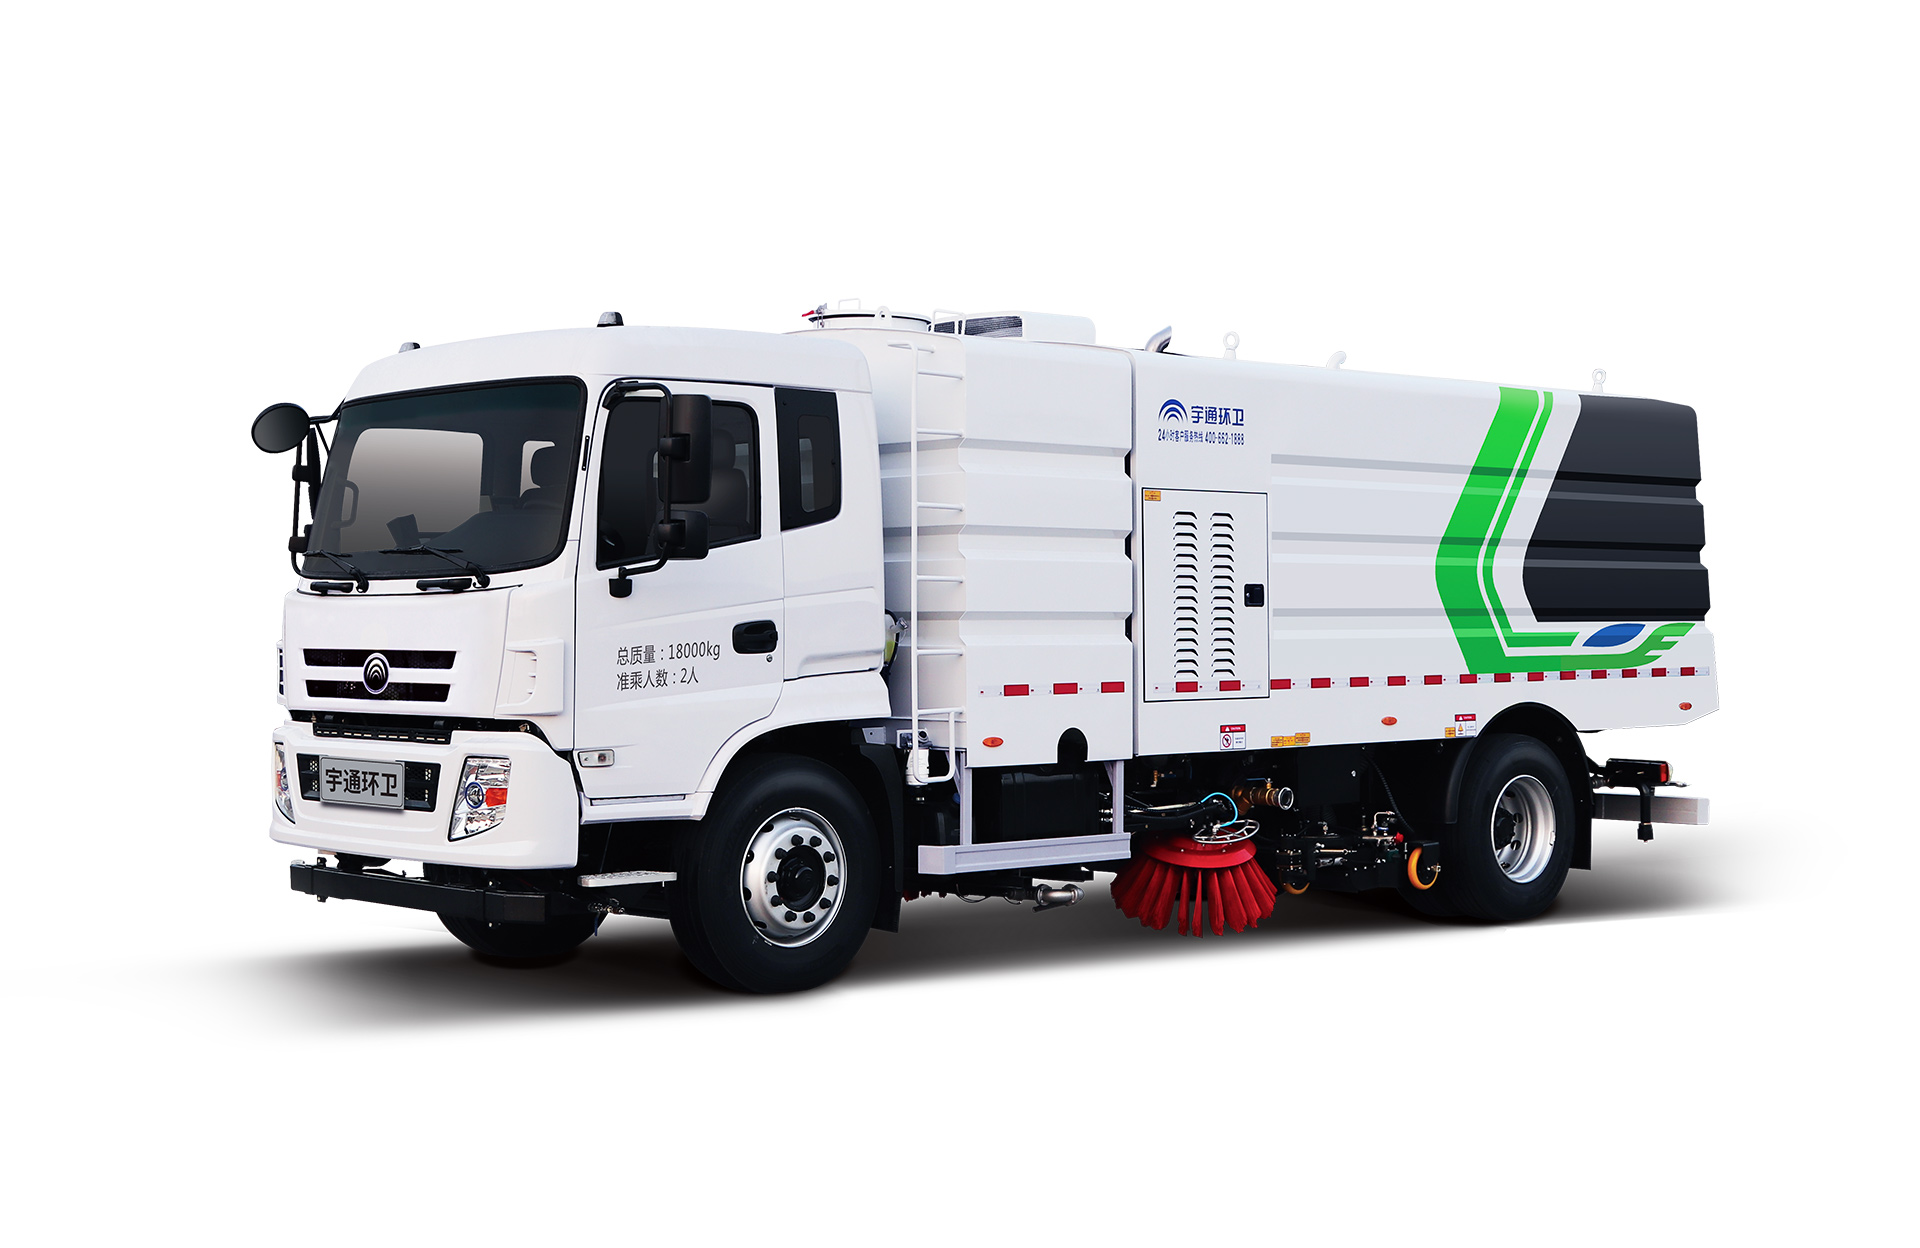 18t洗掃車 宇通環衛洗掃車主要具有路面沖洗、路面清掃、垃圾回收、路緣和路沿石立面洗刷等多種功能。